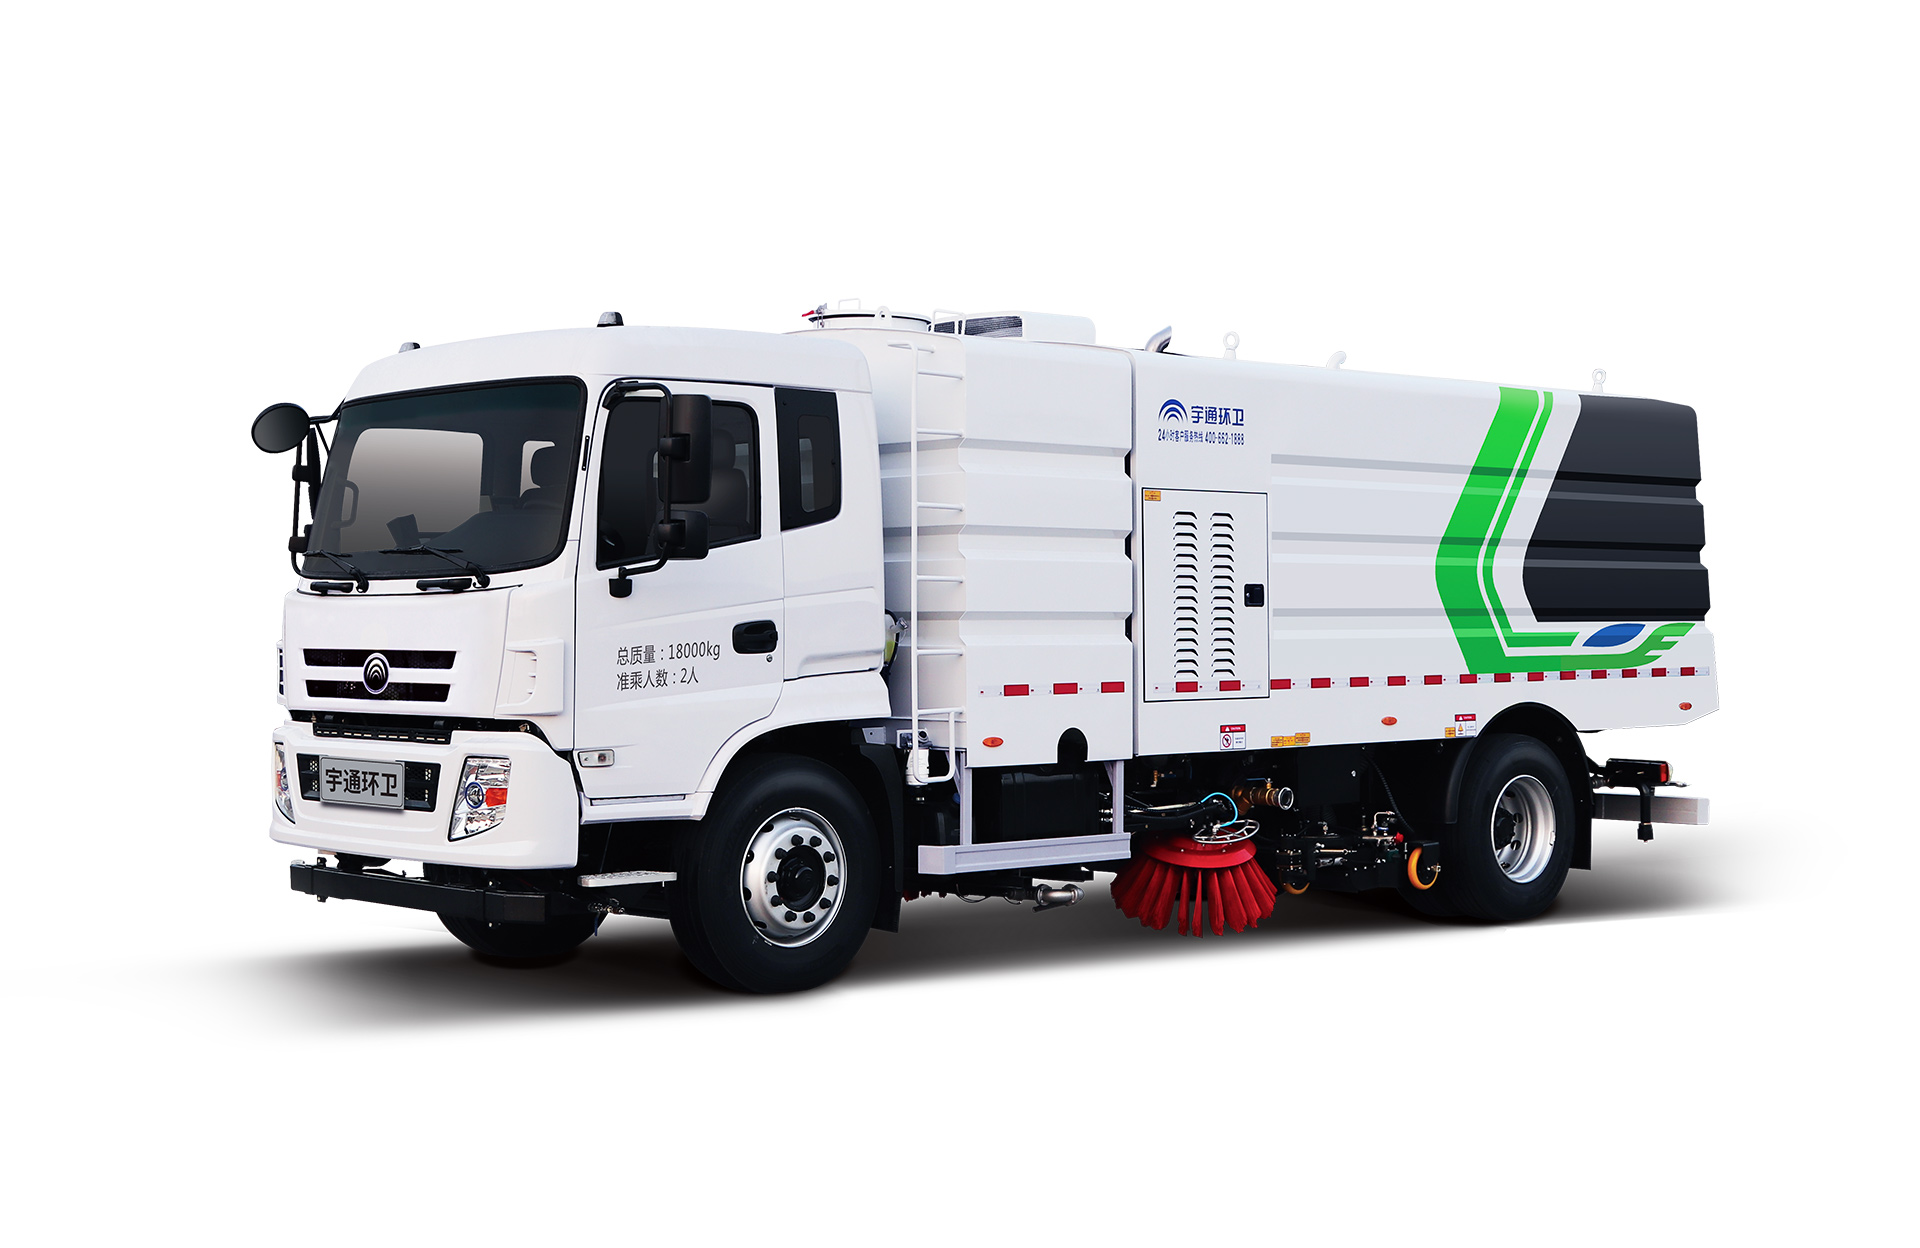 18t洗掃車 宇通環衛洗掃車主要具有路面沖洗、路面清掃、垃圾回收、路緣和路沿石立面洗刷等多種功能。